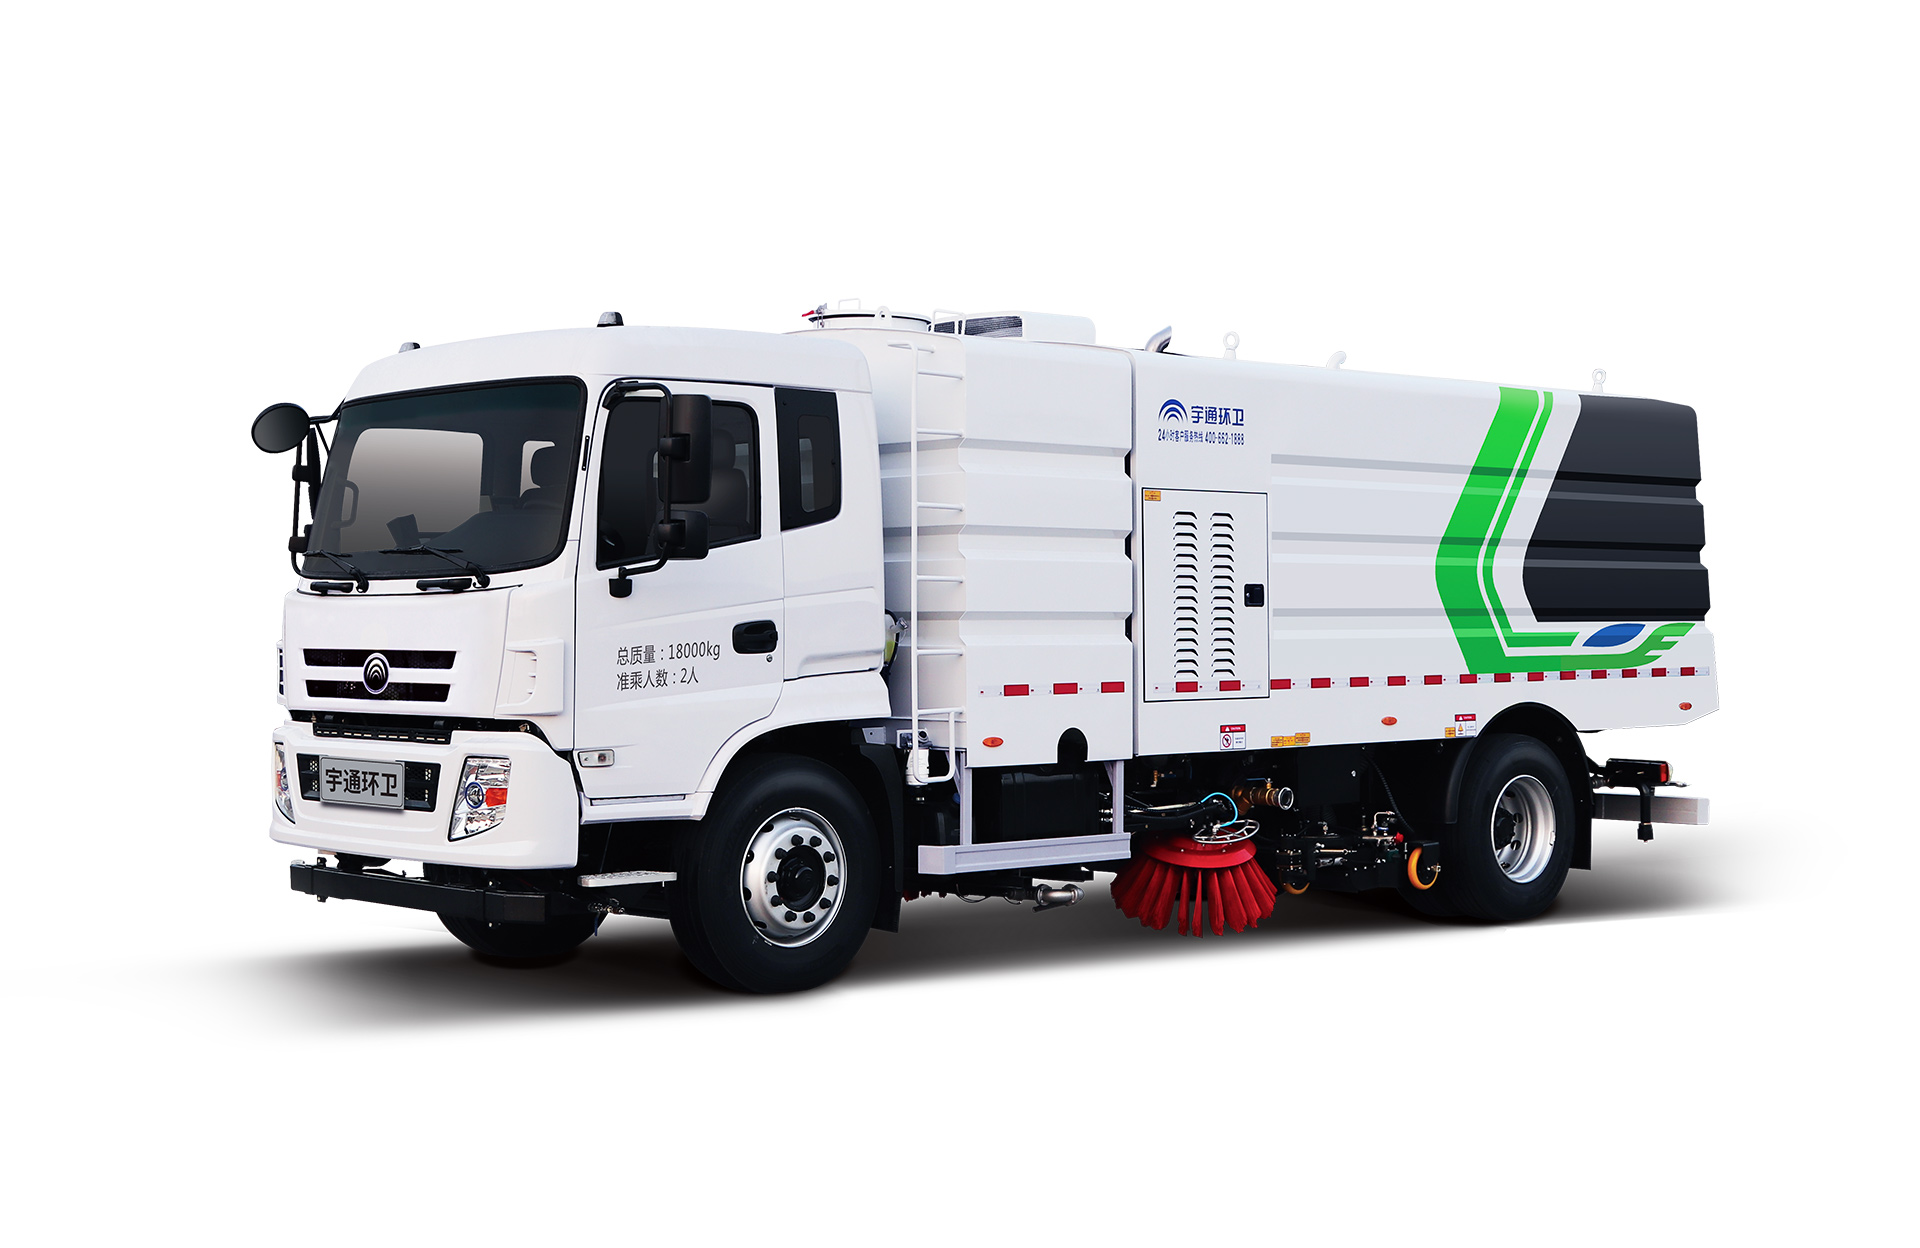 18t洗掃車 宇通環衛洗掃車主要具有路面沖洗、路面清掃、垃圾回收、路緣和路沿石立面洗刷等多種功能。